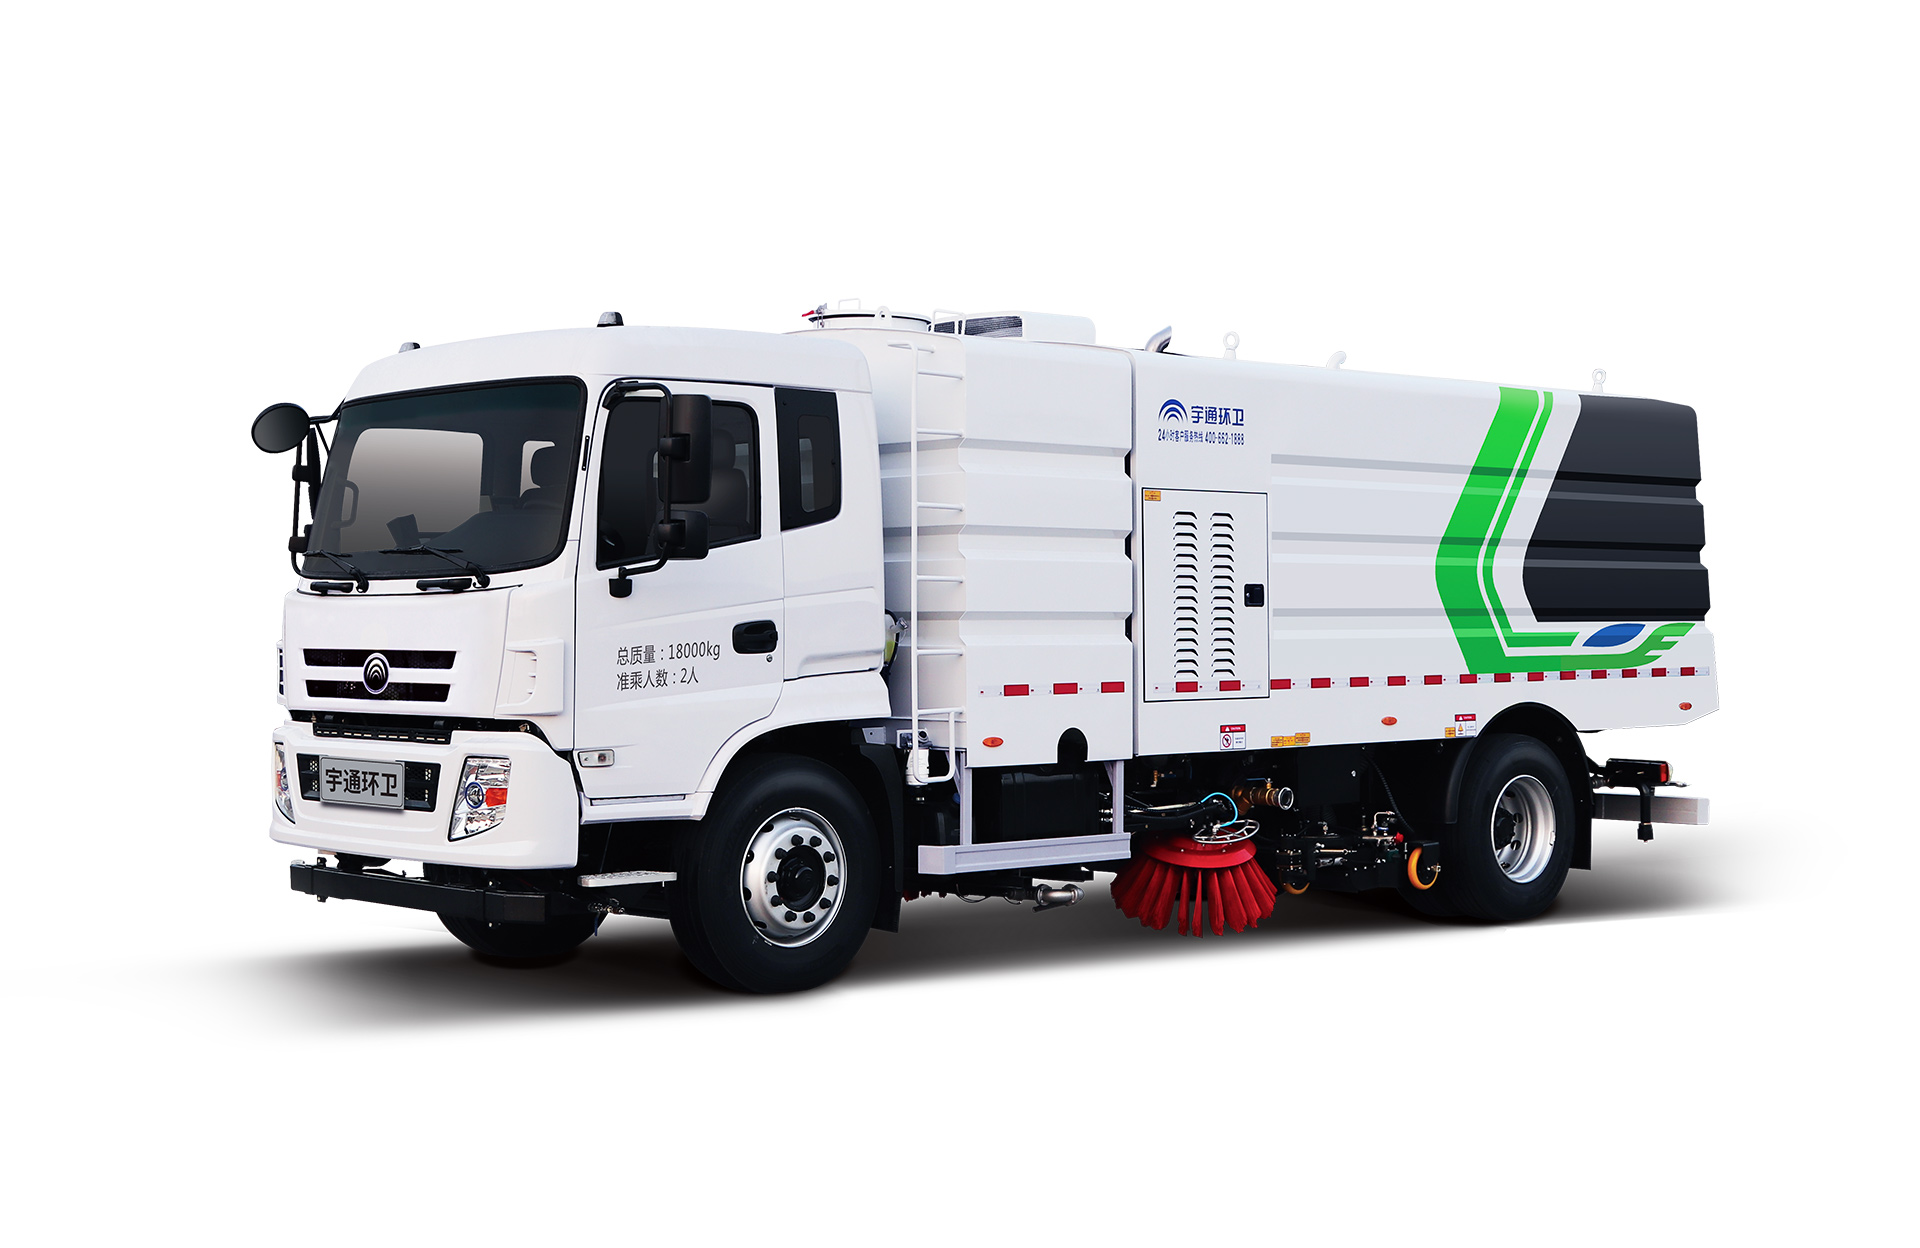 18t洗掃車 宇通環衛洗掃車主要具有路面沖洗、路面清掃、垃圾回收、路緣和路沿石立面洗刷等多種功能。